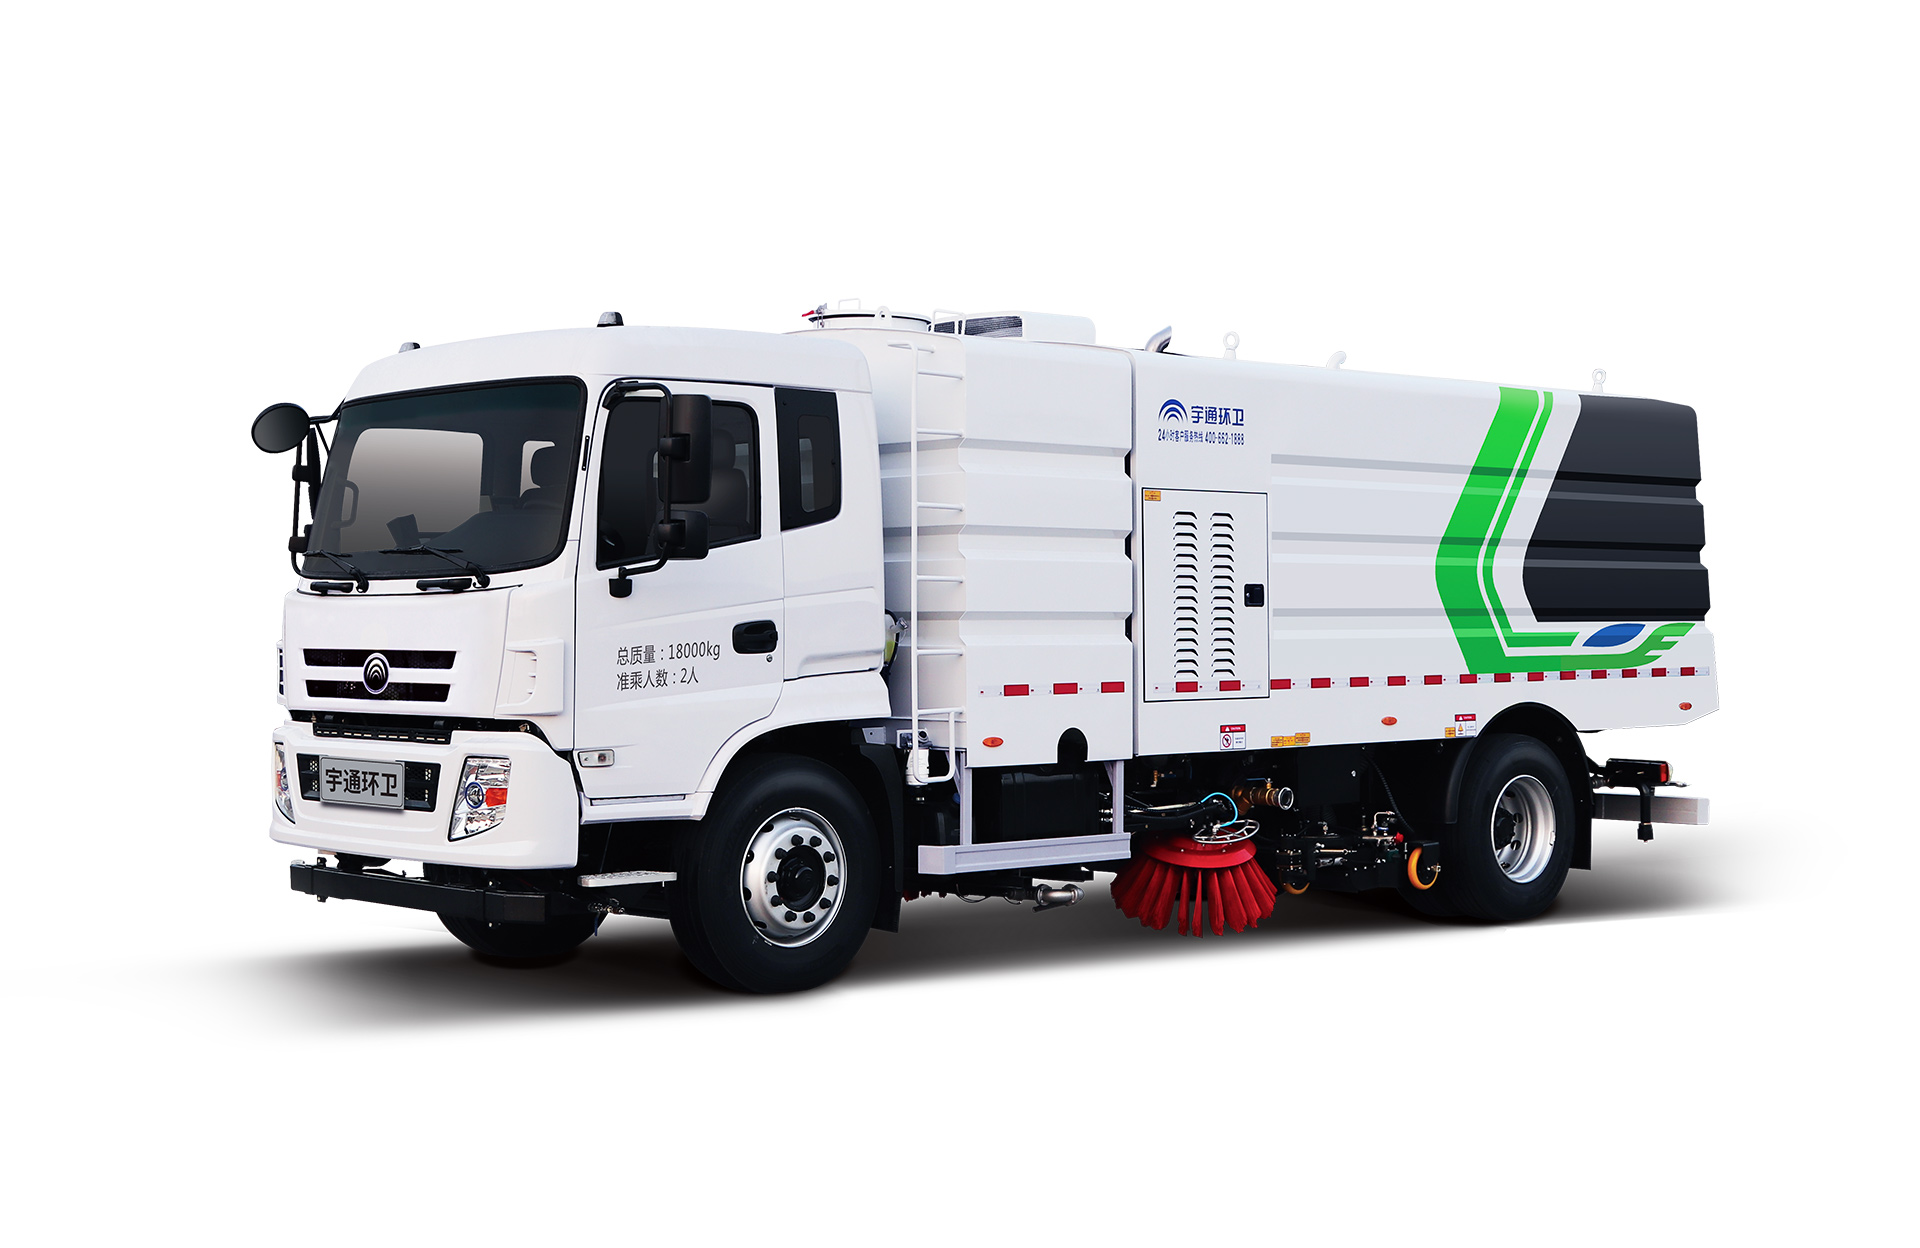 18t洗掃車 宇通環衛洗掃車主要具有路面沖洗、路面清掃、垃圾回收、路緣和路沿石立面洗刷等多種功能。